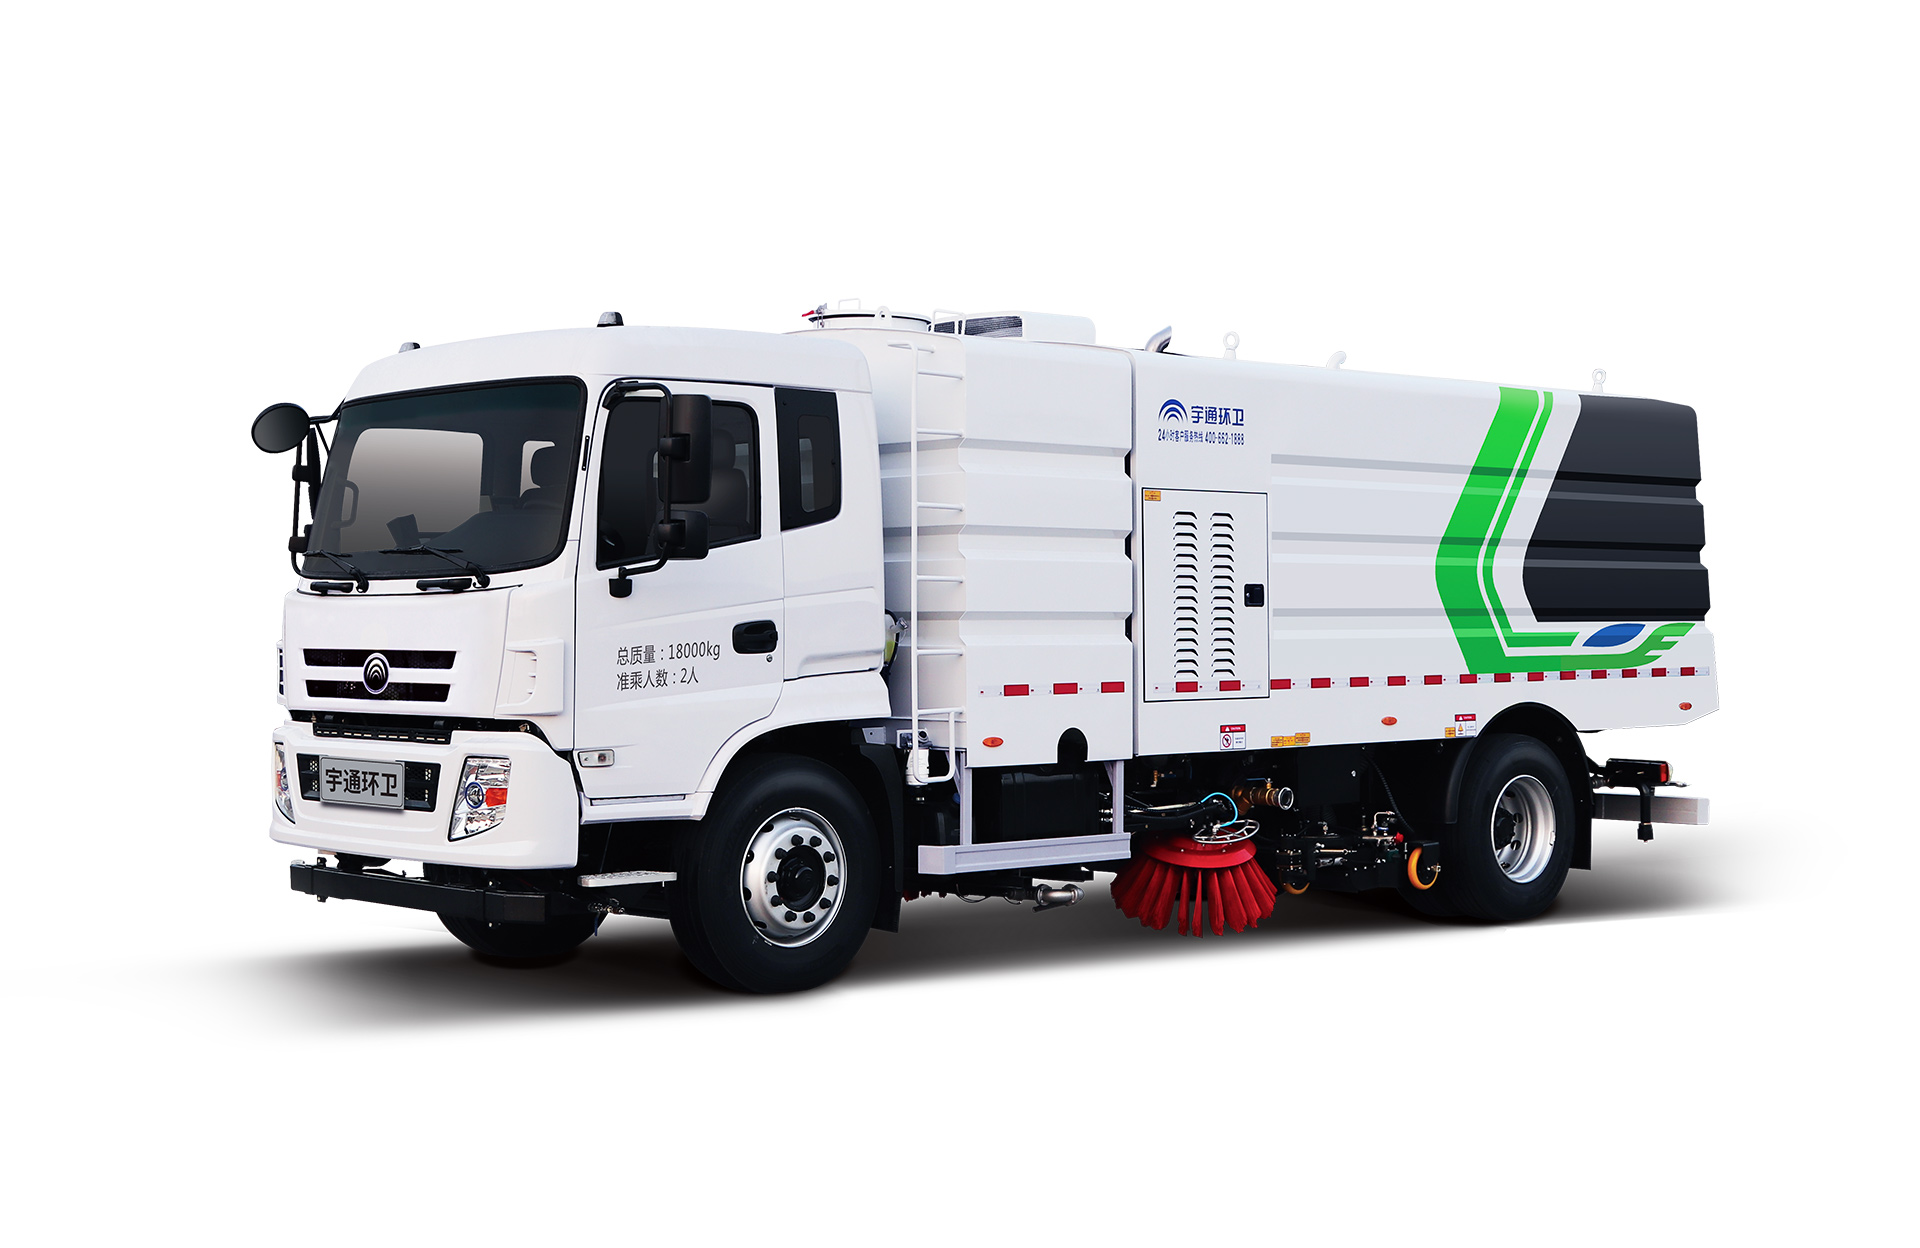 18t洗掃車 宇通環衛洗掃車主要具有路面沖洗、路面清掃、垃圾回收、路緣和路沿石立面洗刷等多種功能。